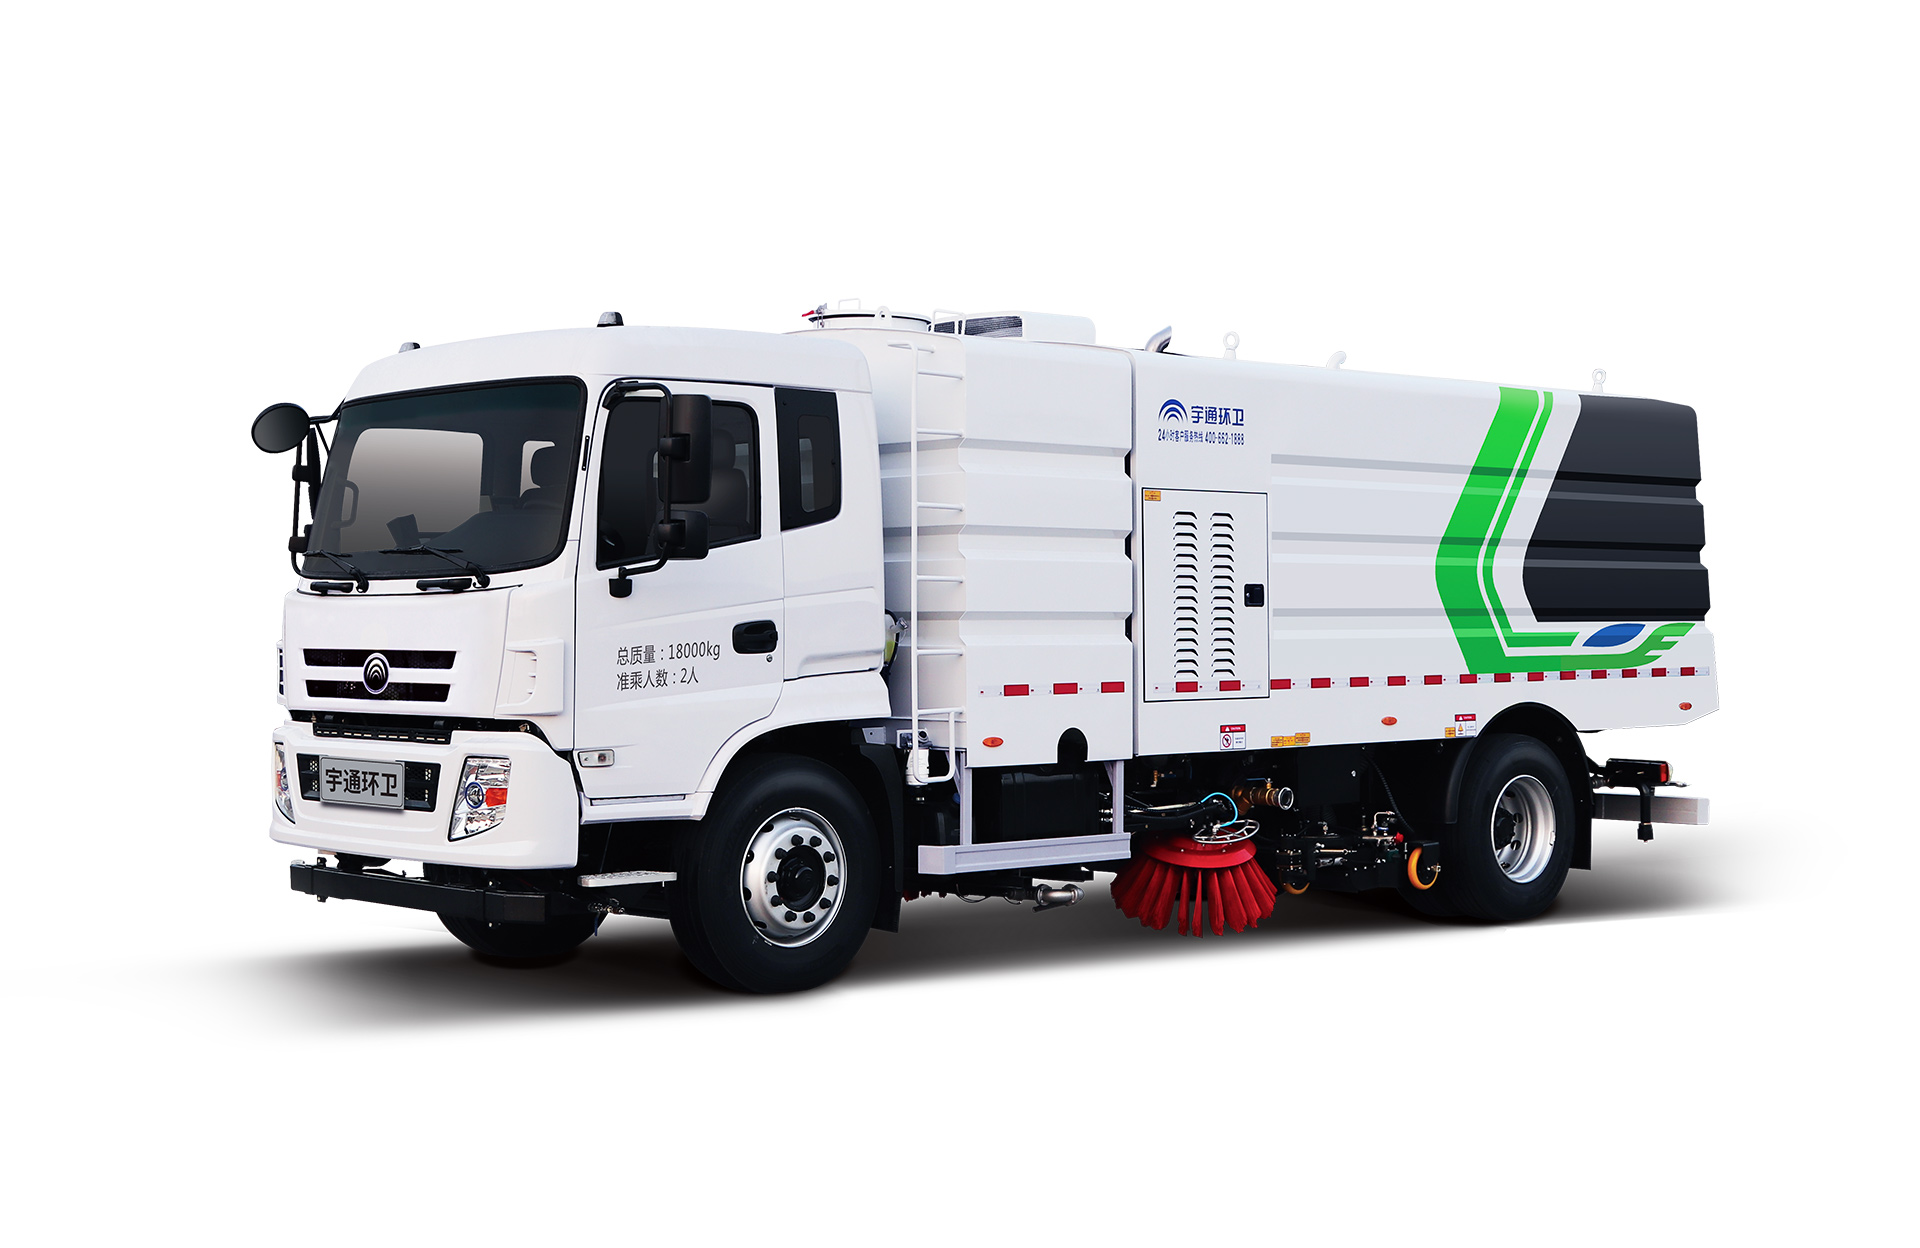 18t洗掃車 宇通環衛洗掃車主要具有路面沖洗、路面清掃、垃圾回收、路緣和路沿石立面洗刷等多種功能。